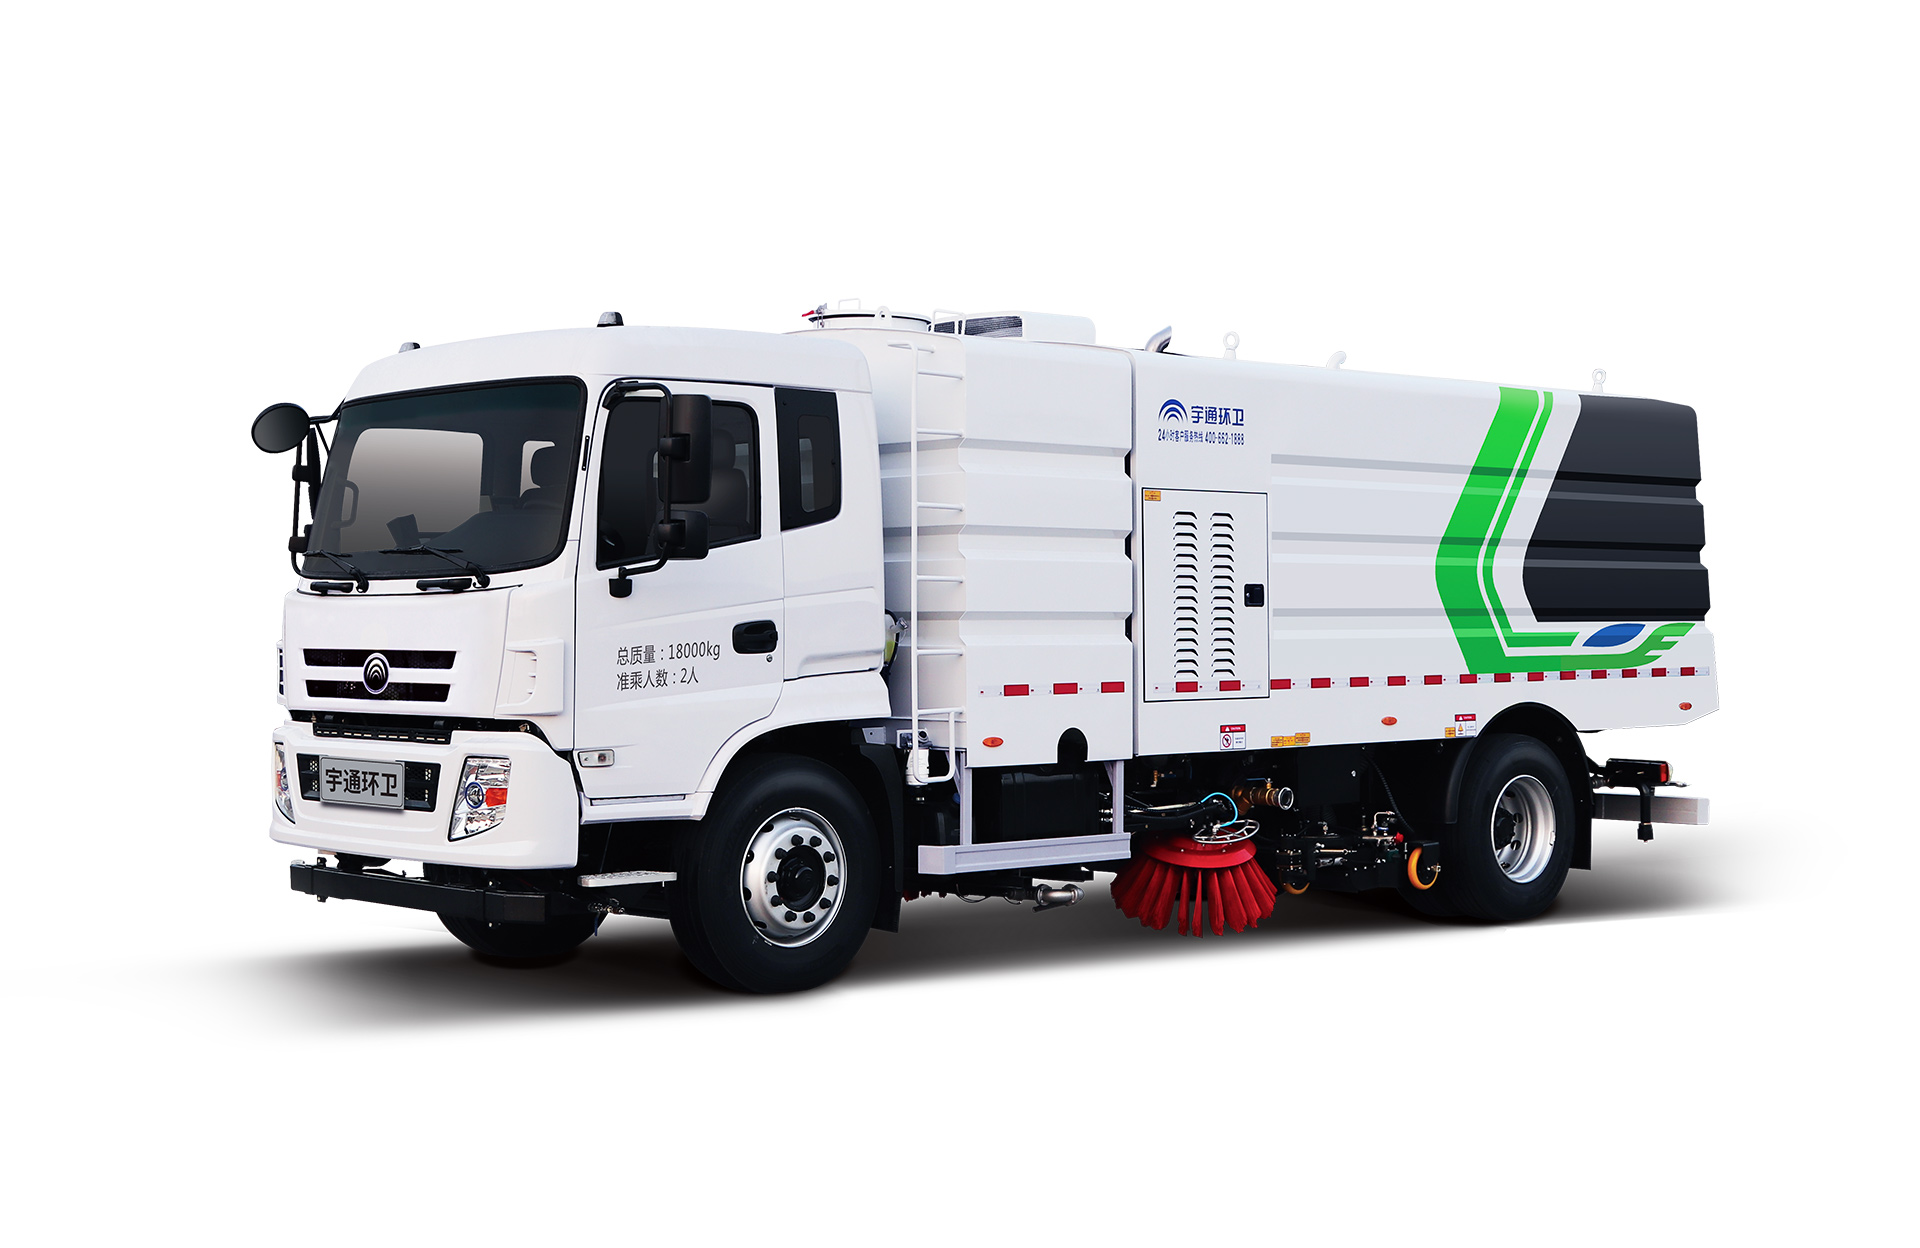 18t洗掃車 宇通環衛洗掃車主要具有路面沖洗、路面清掃、垃圾回收、路緣和路沿石立面洗刷等多種功能。